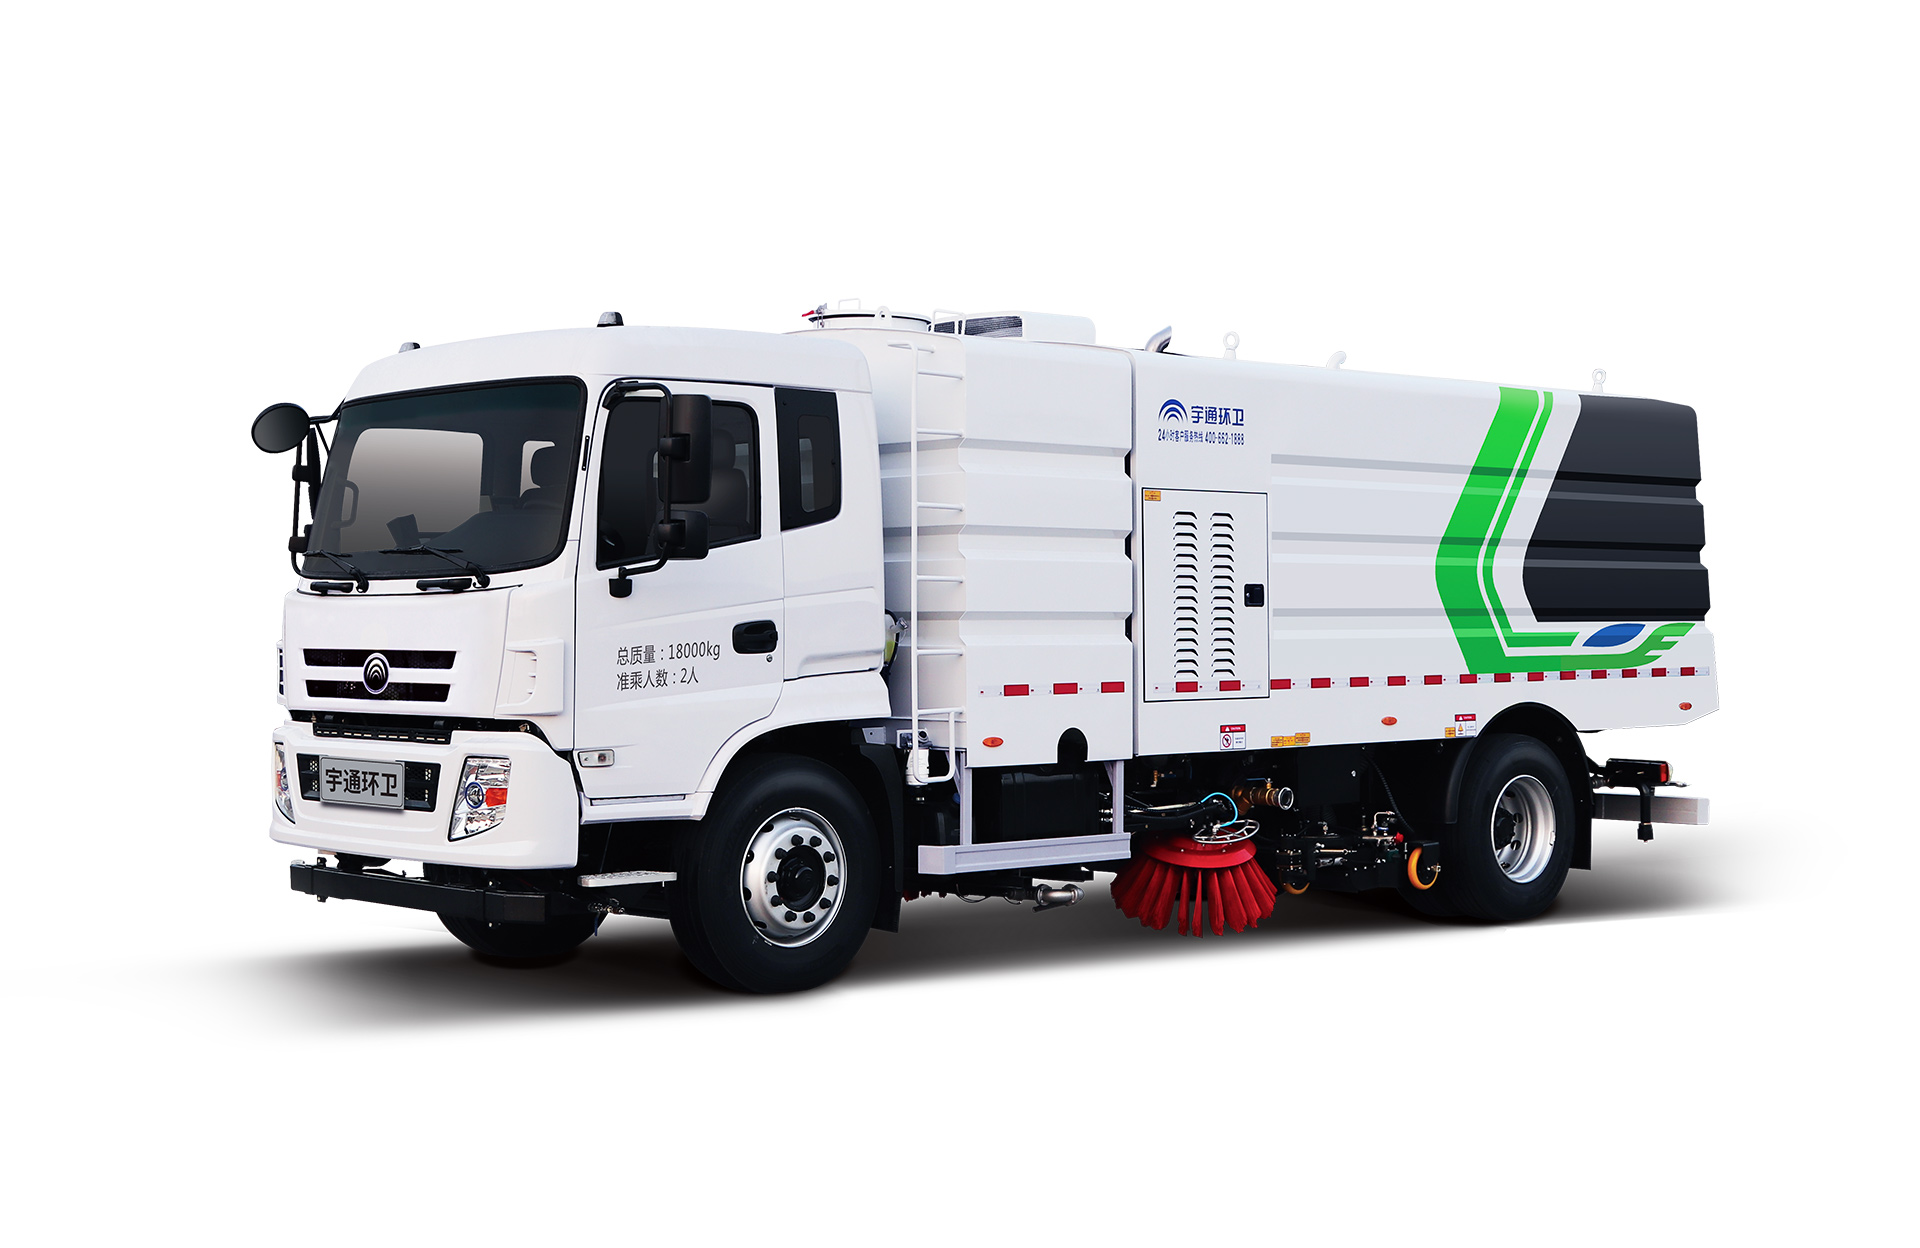 18t洗掃車 宇通環衛洗掃車主要具有路面沖洗、路面清掃、垃圾回收、路緣和路沿石立面洗刷等多種功能。